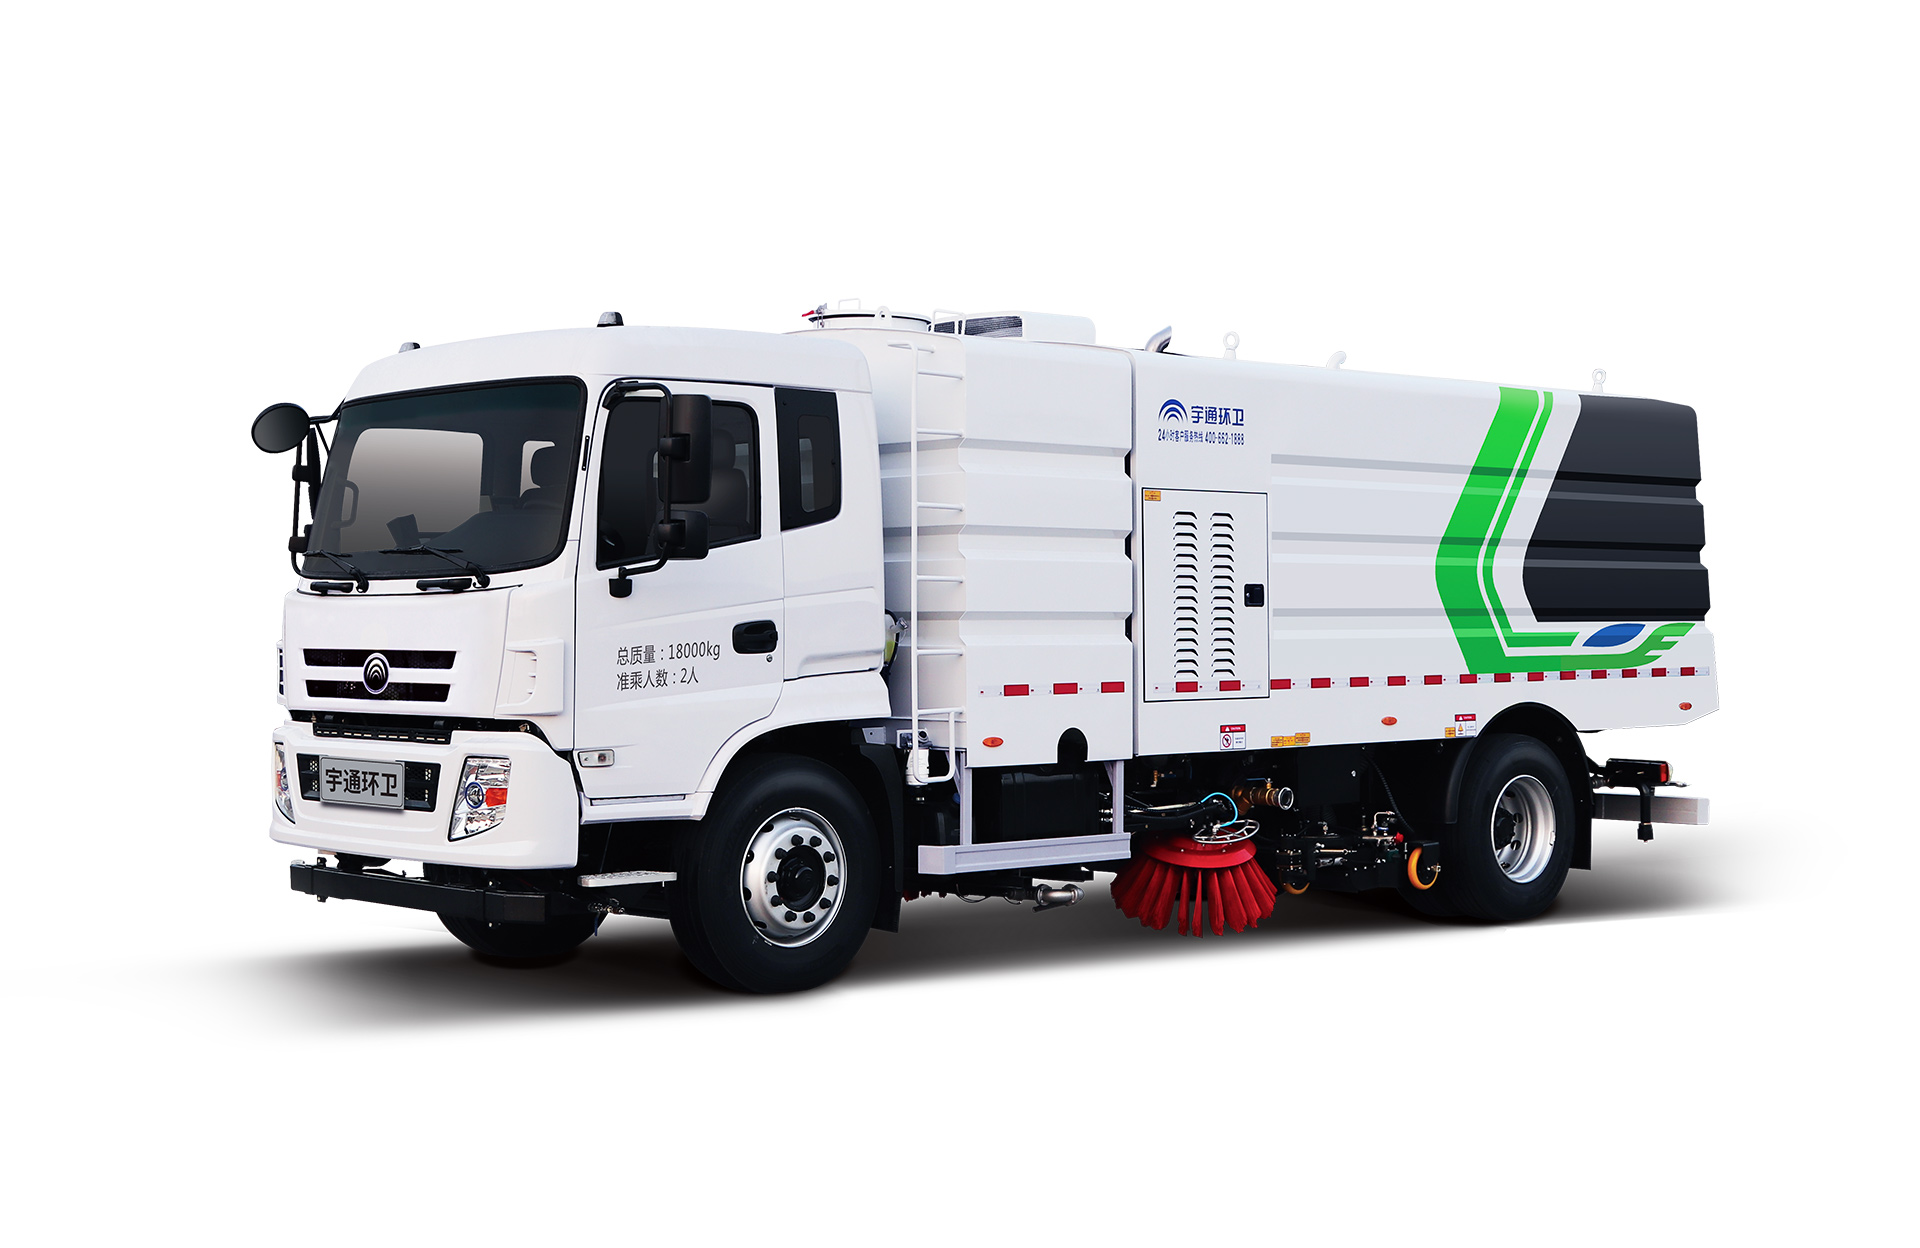 18t洗掃車 宇通環衛洗掃車主要具有路面沖洗、路面清掃、垃圾回收、路緣和路沿石立面洗刷等多種功能。